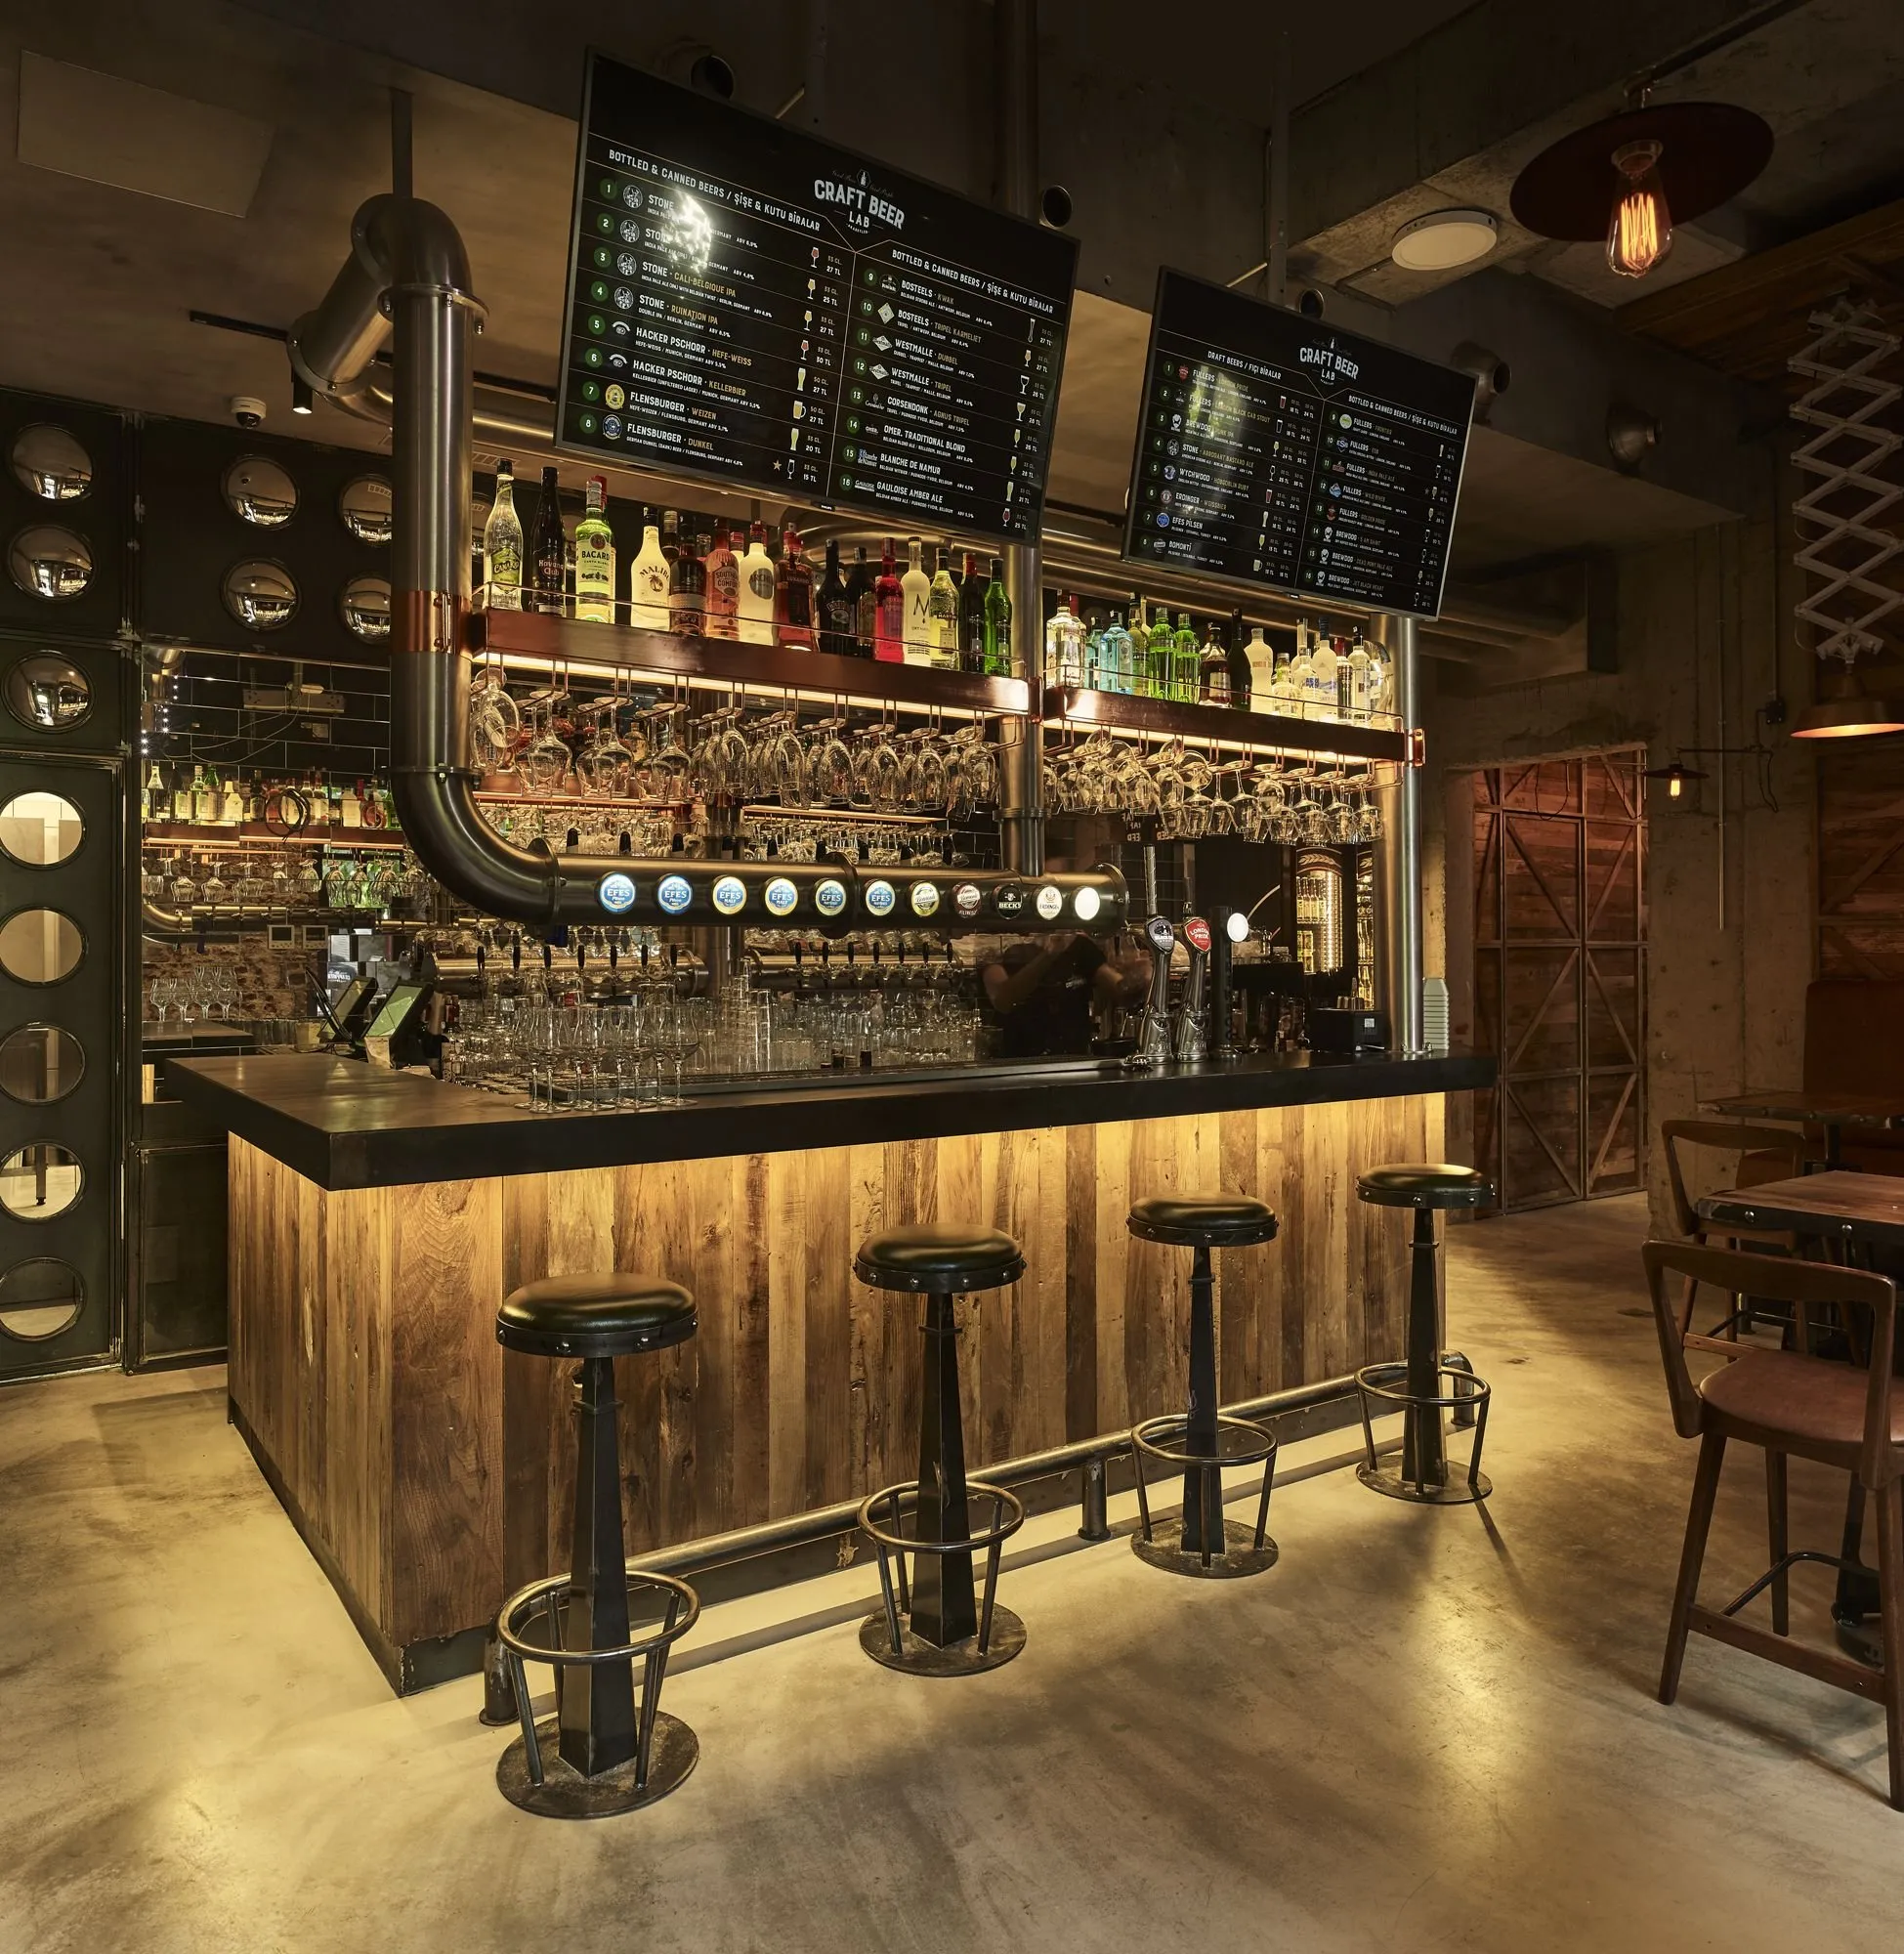 Дизайн пивных баров - создание дизайн проекта пивного бара под ключ, фото интерьера | INSPIREGROUP